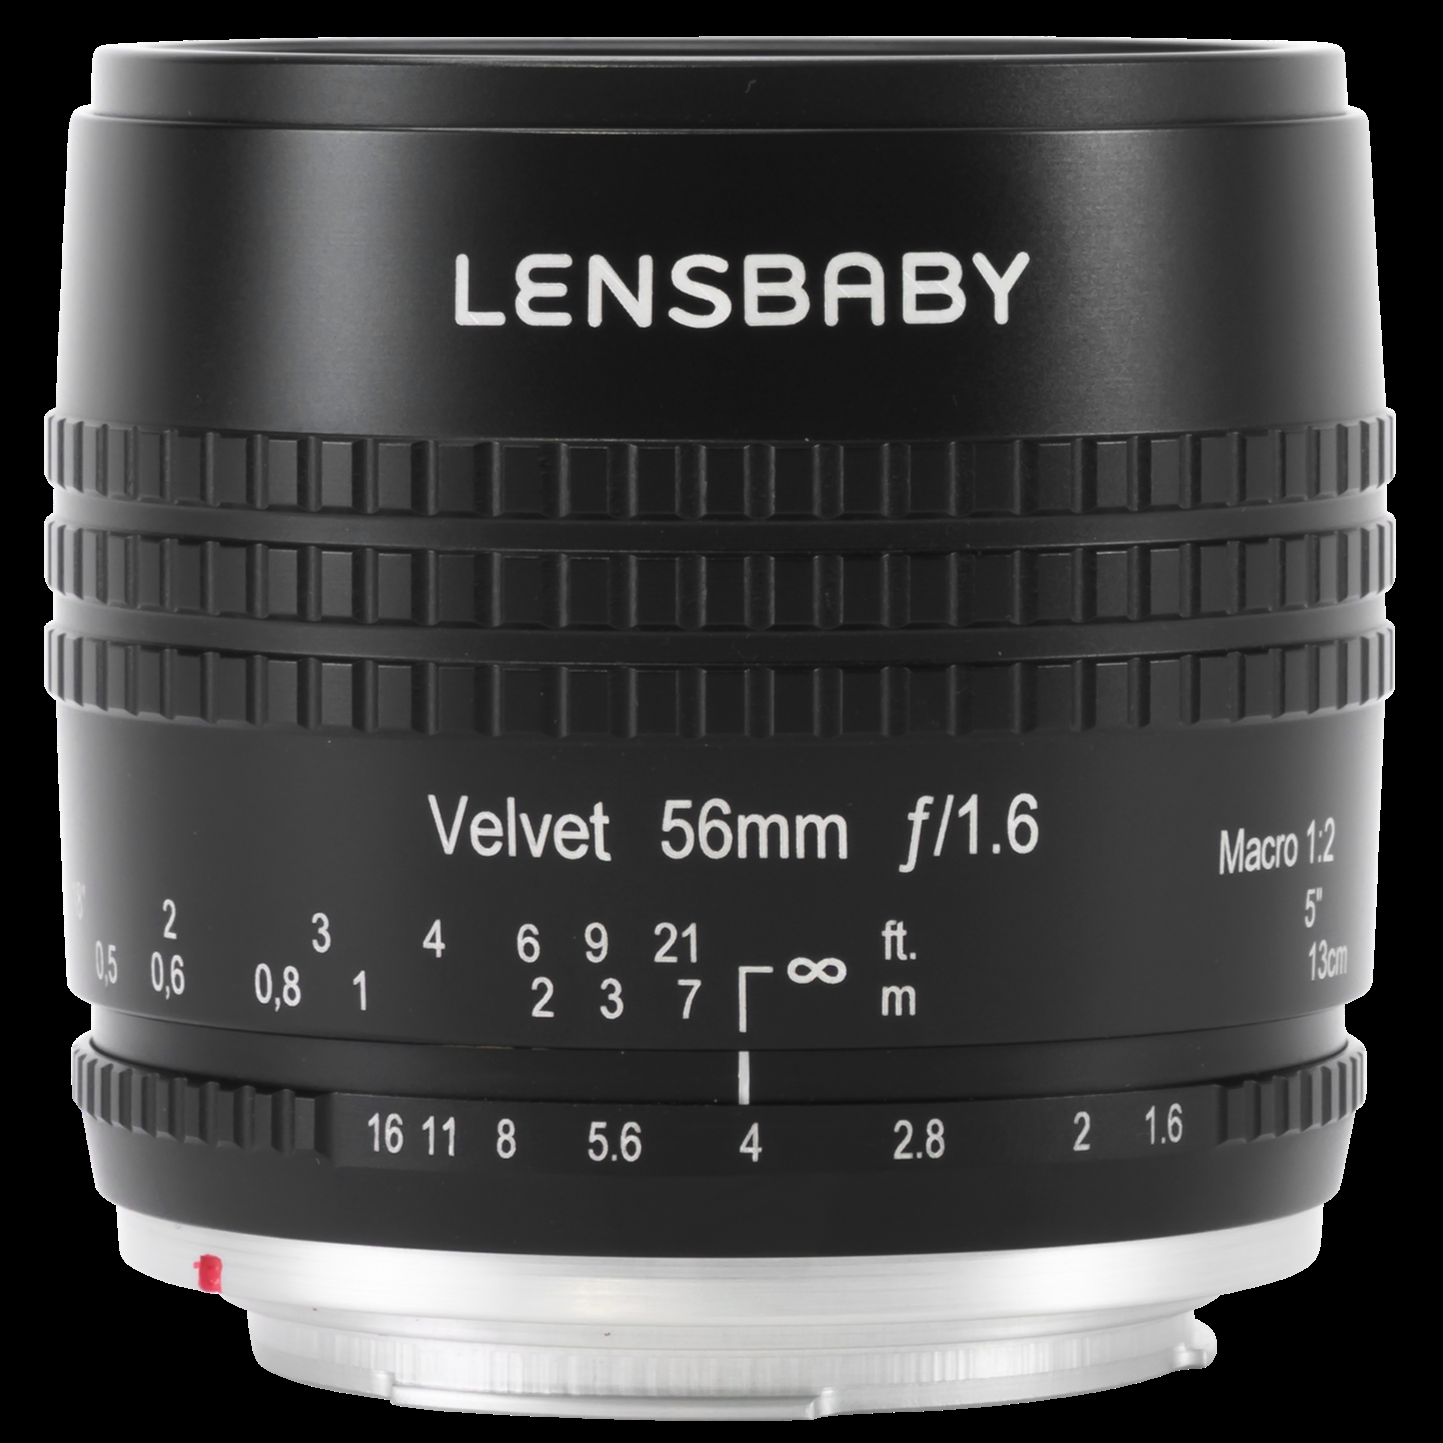 Lensbaby Velvet 56mm f/1.6 Lens for Sony E